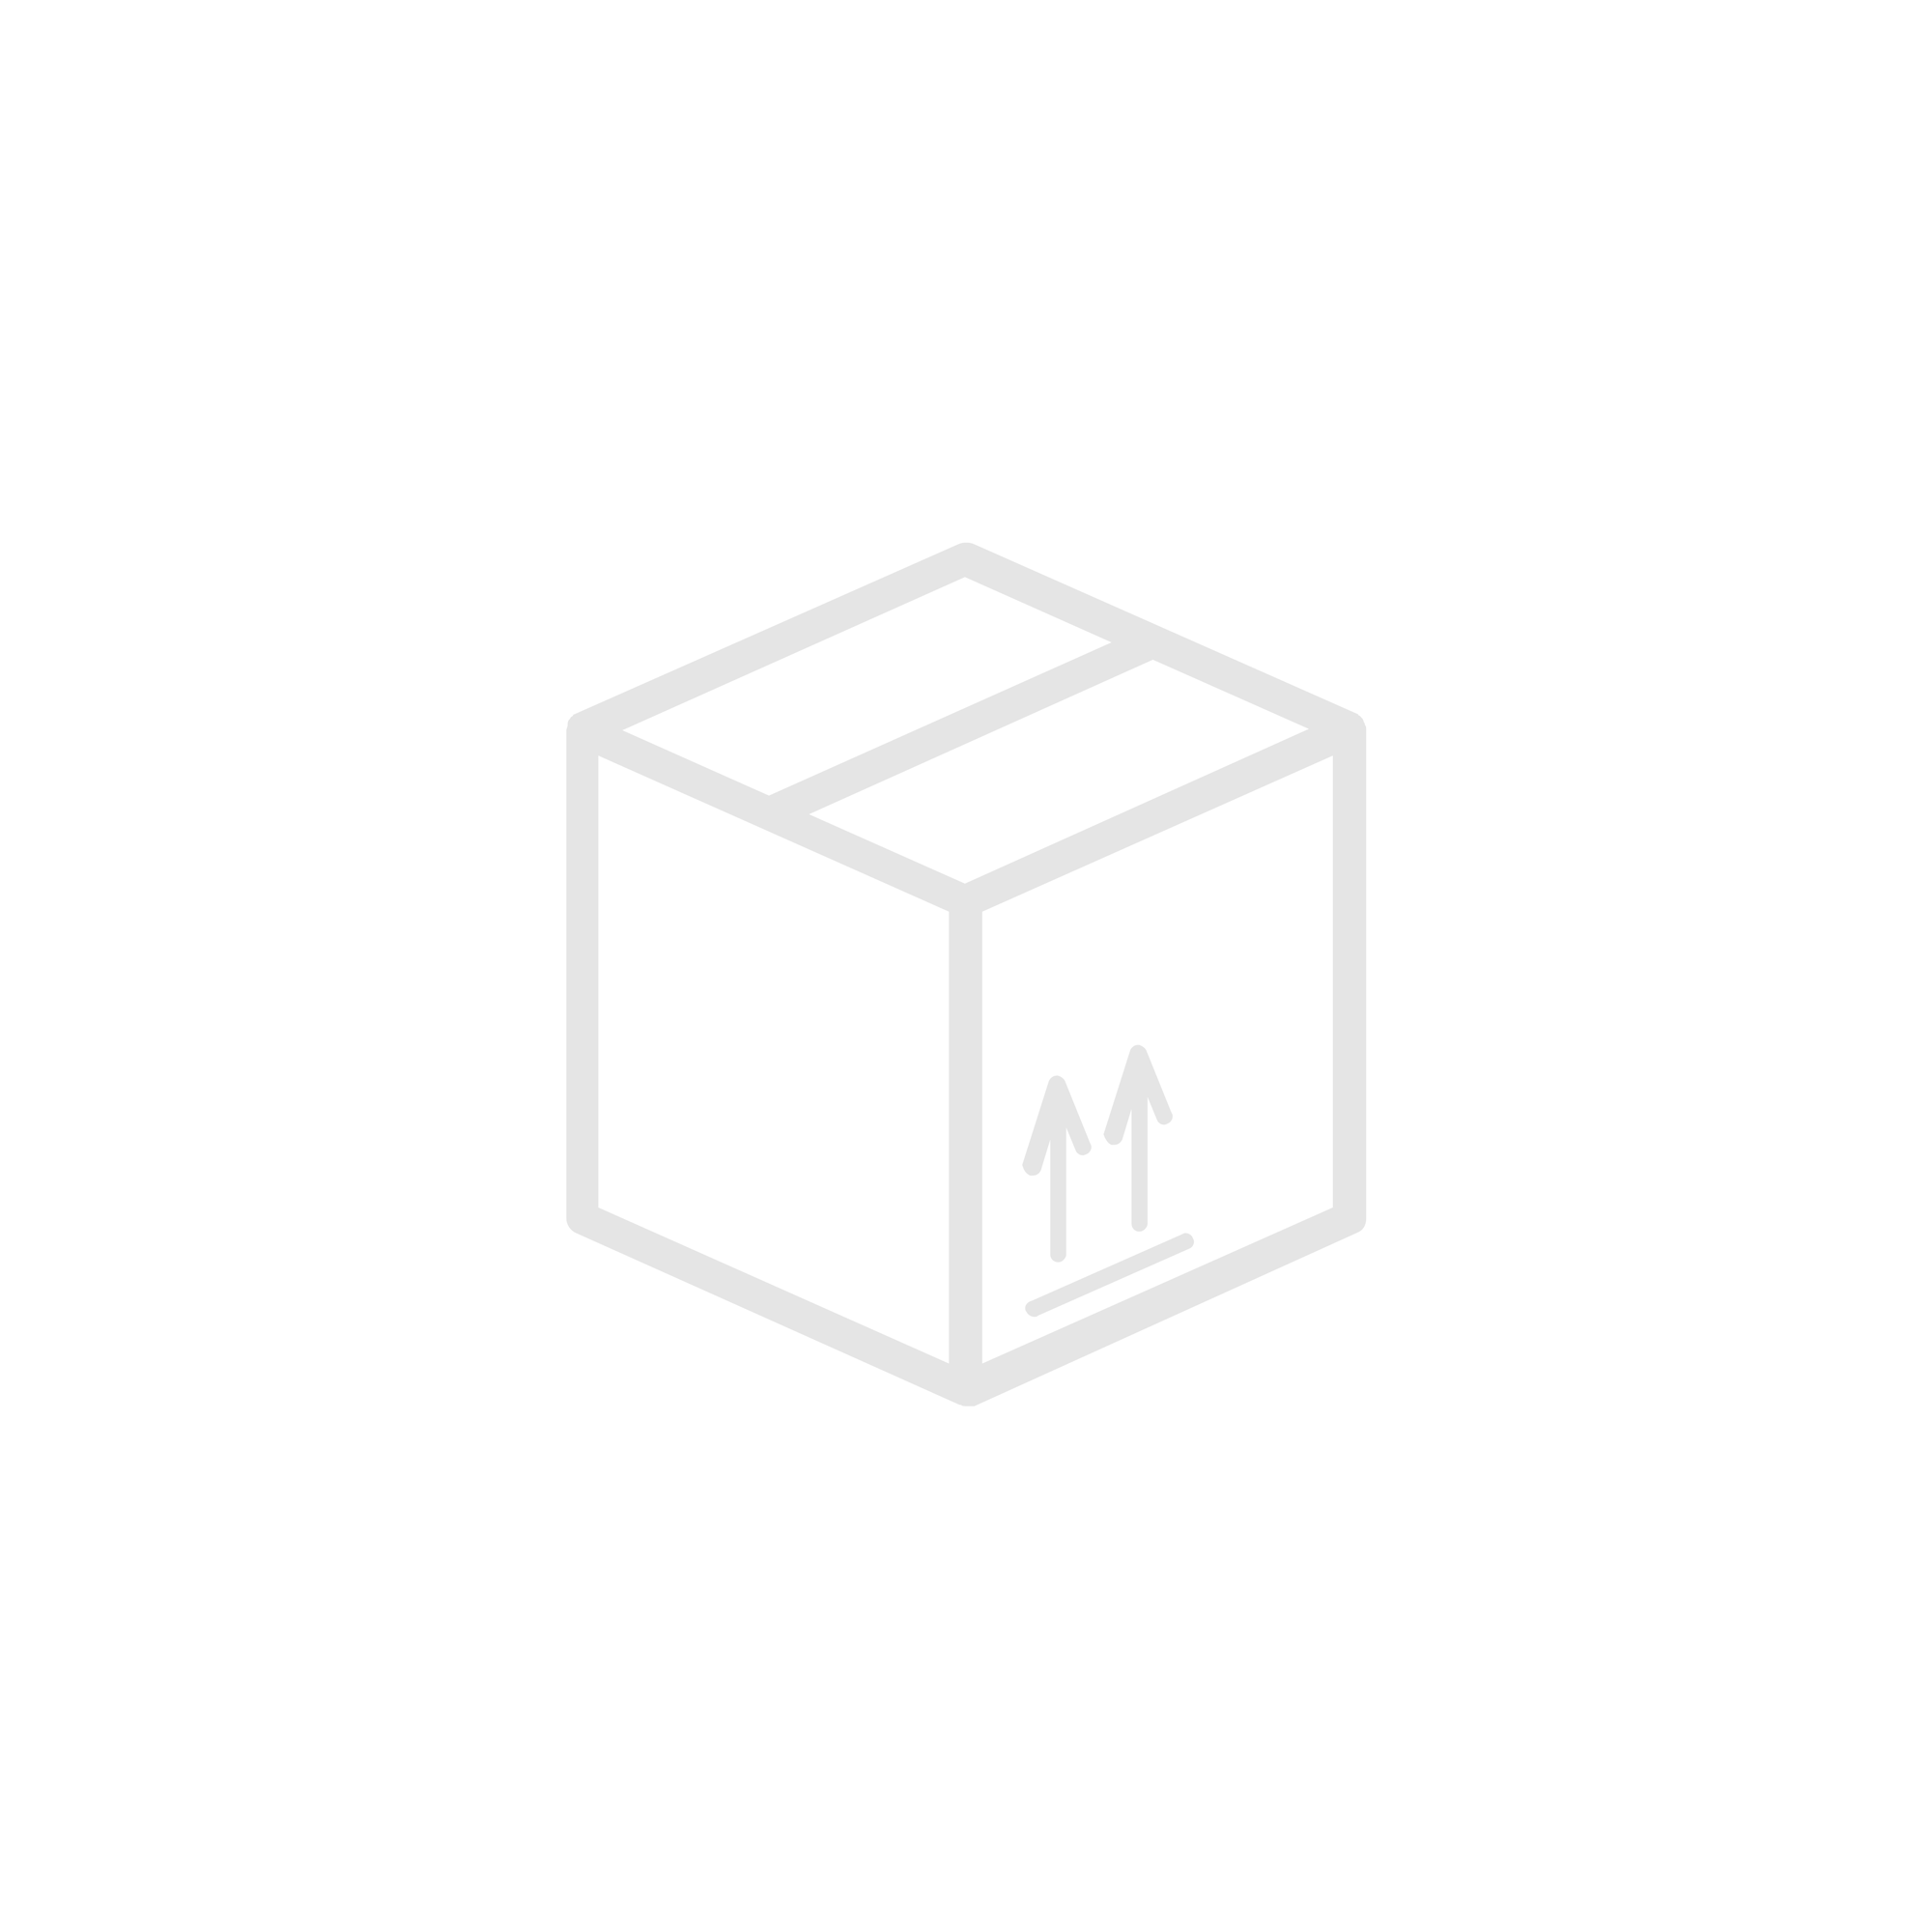 Kaseta (floor box) 4 moduły, antracyt | 83002CAT Efapel